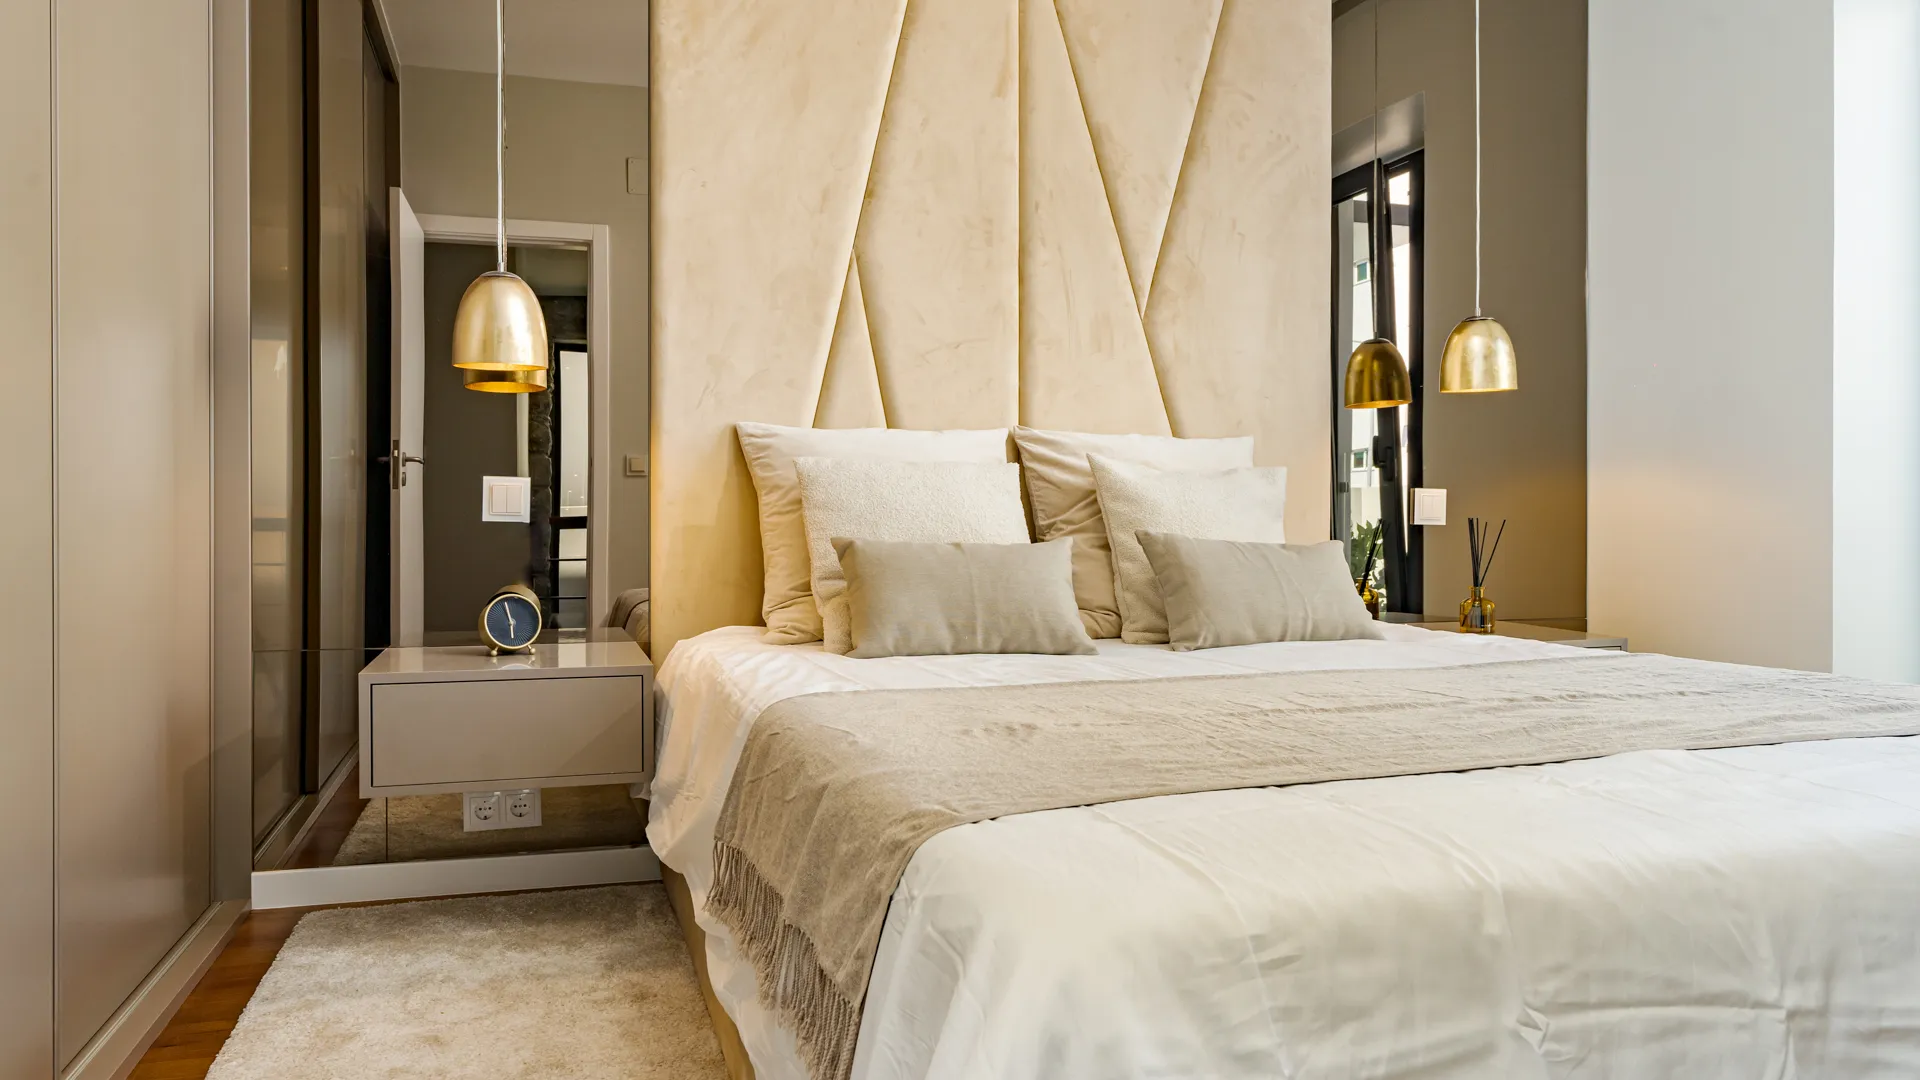 Madalenas bedroom Design